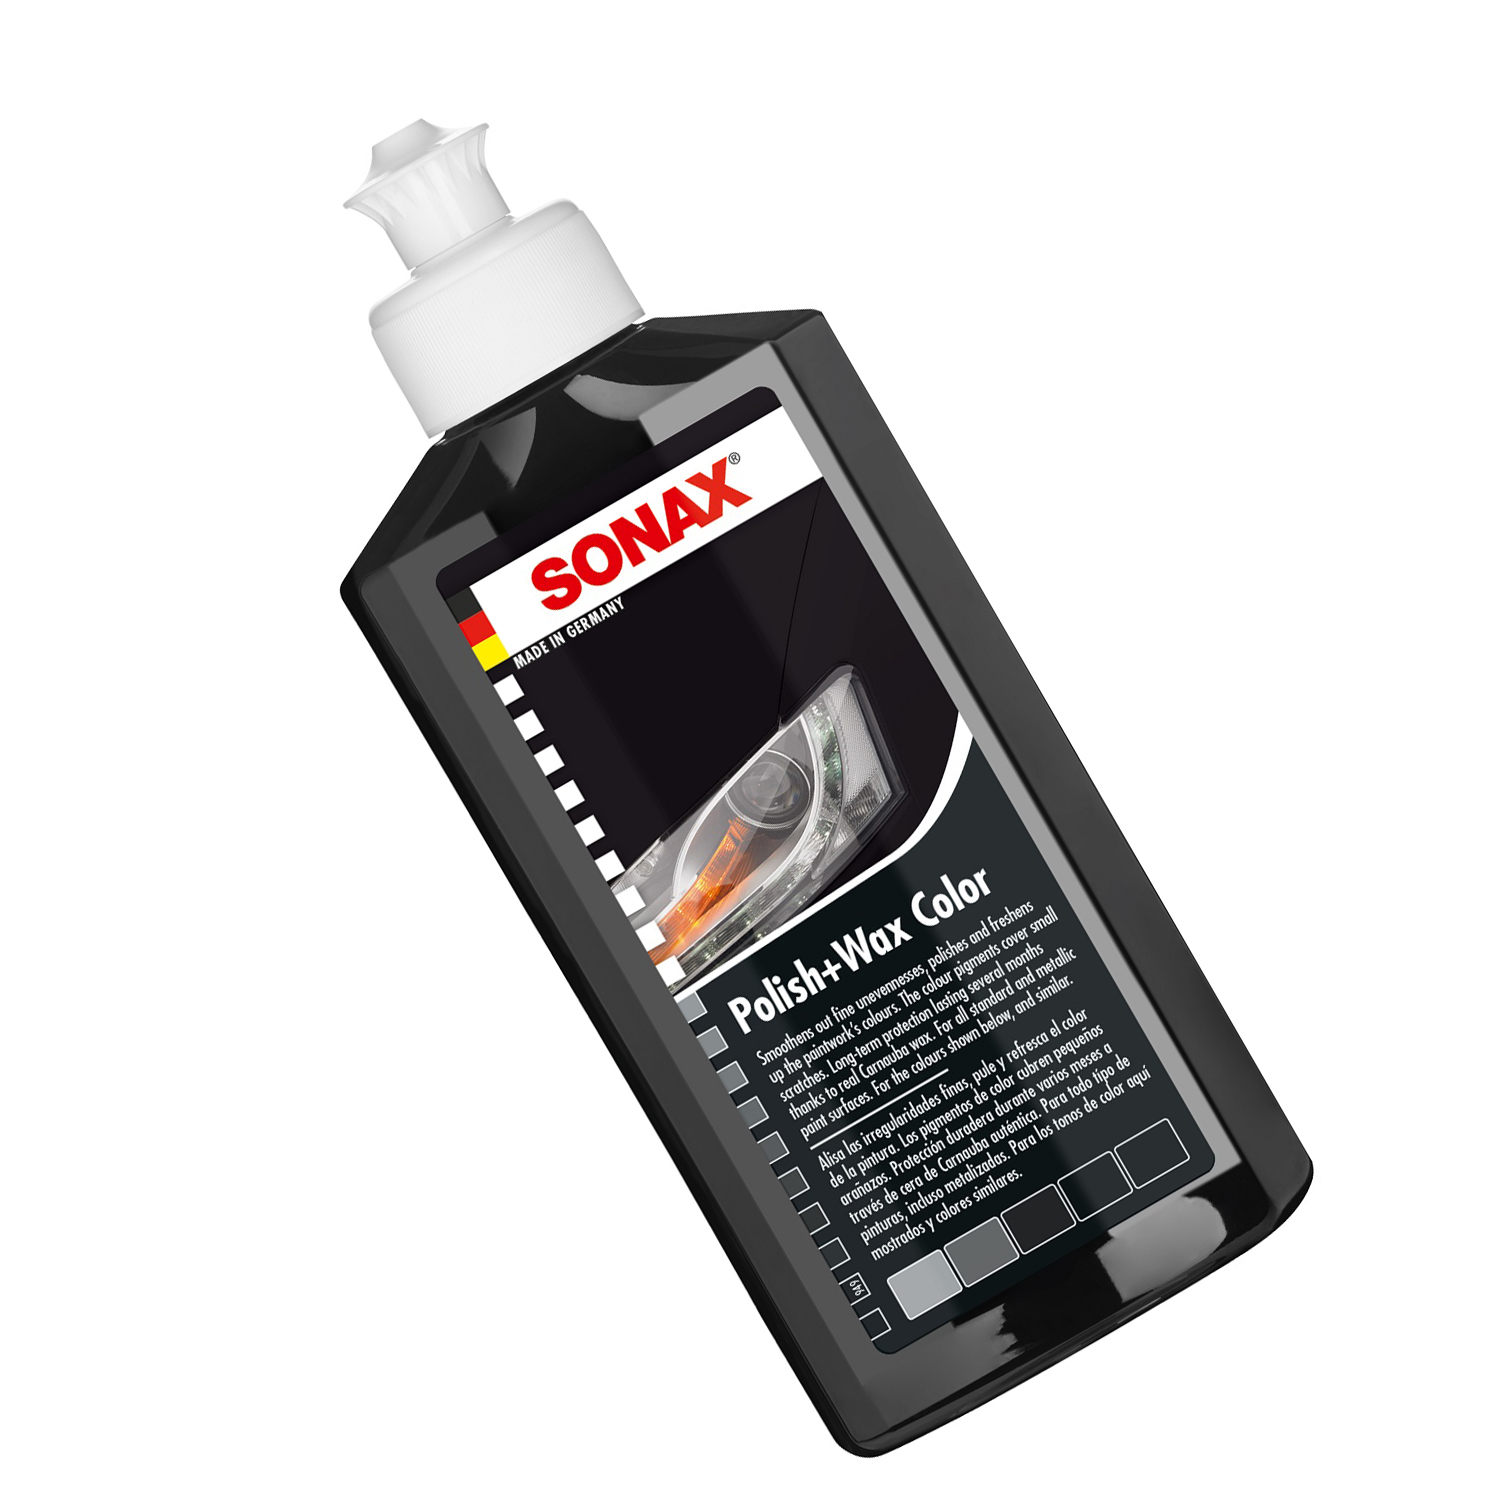 Kem đánh bóng và bảo vệ sơn màu đen xe ô tô Sonax 296141 250ml - tặng 1 khăn 3M màu ngẫu nhiên - Che phủ vết xước nhỏ, phục hồi sơn cũ, tăng độ mịn cho mặt sơn